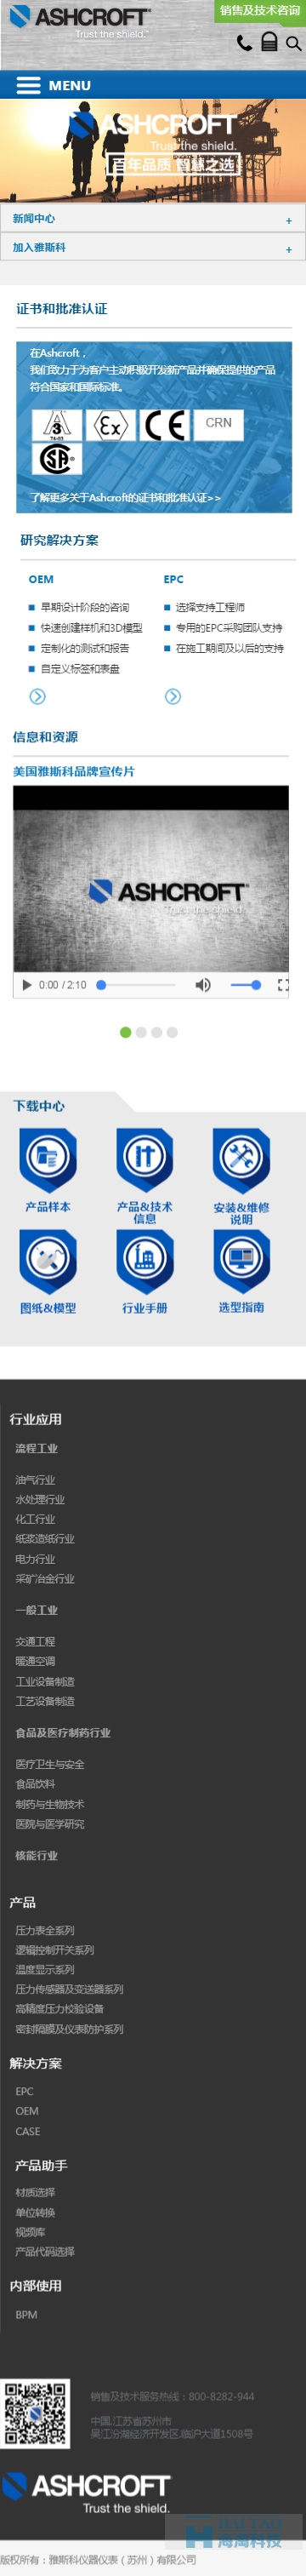 雅斯科仪器仪表响应式网站制作,响应式网站设计公司,上海响应式网页制作